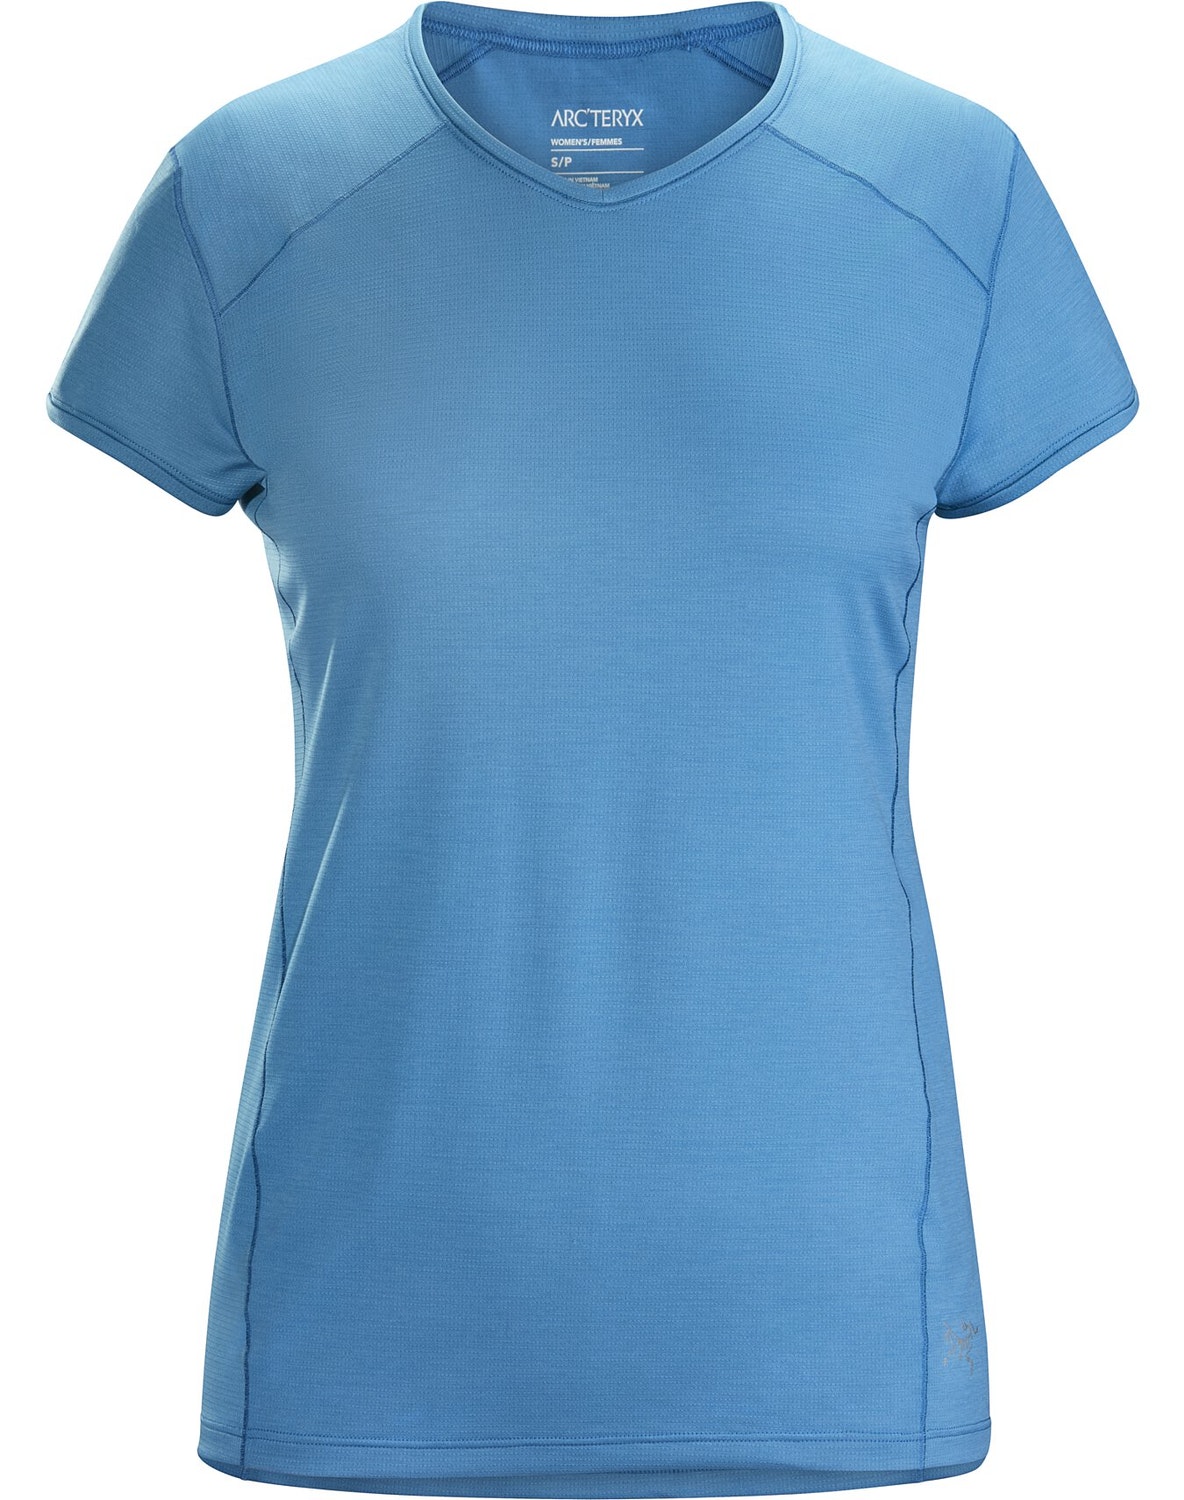 T-shirt Arc'teryx Kapta Donna Blu Chiaro - IT-46136975